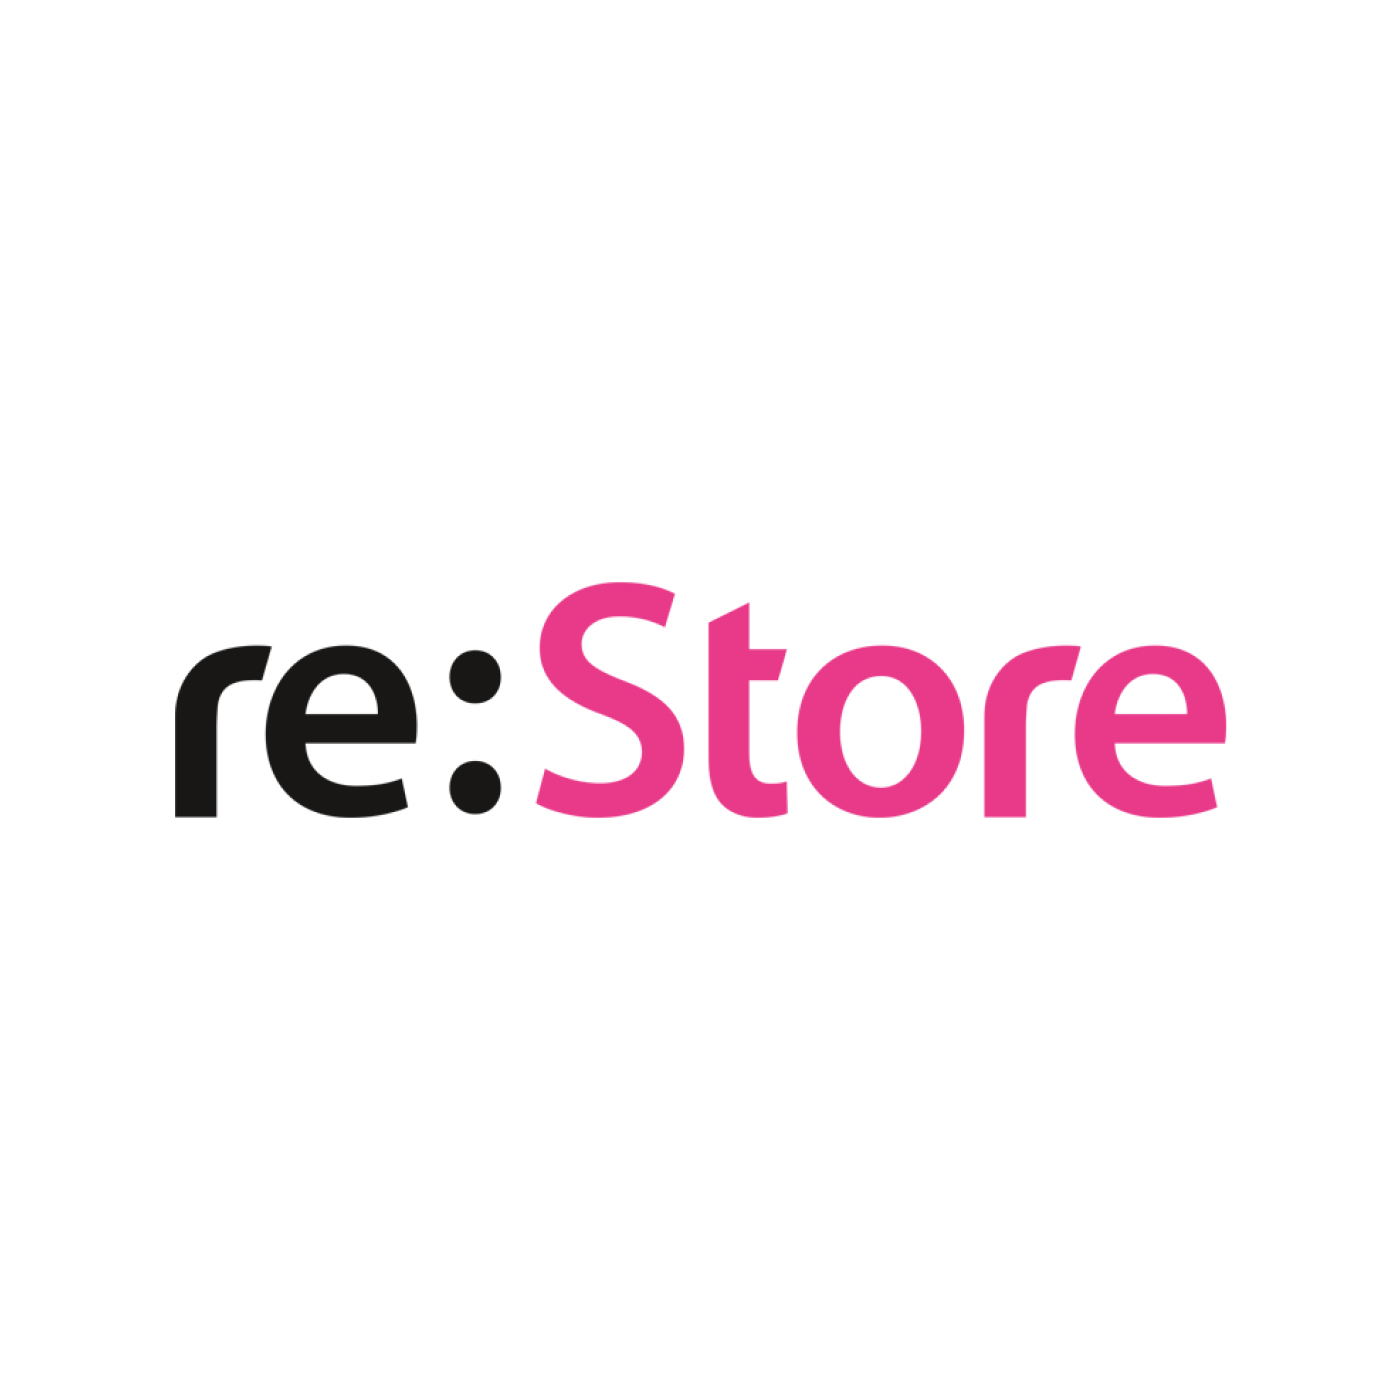 Роялкамс. Restore эмблема. Re Store. Ресторе логотип. Rem Store.